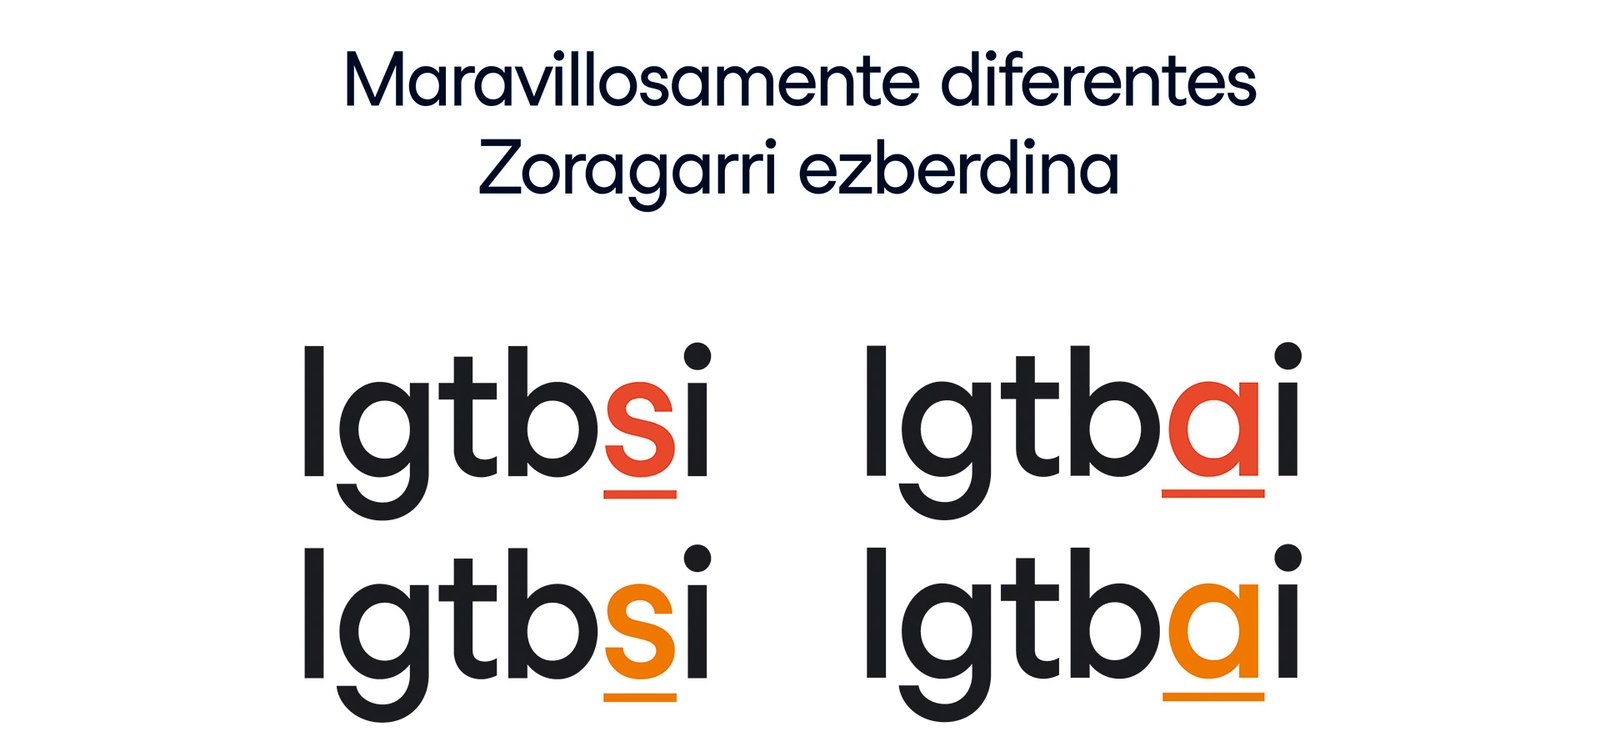 El Ayuntamiento de Pamplona lanza la campaña ‘LGTBSI / LGTBAI’ para promover el respeto a la diversidad sexual y de género y su reconocimiento positivo